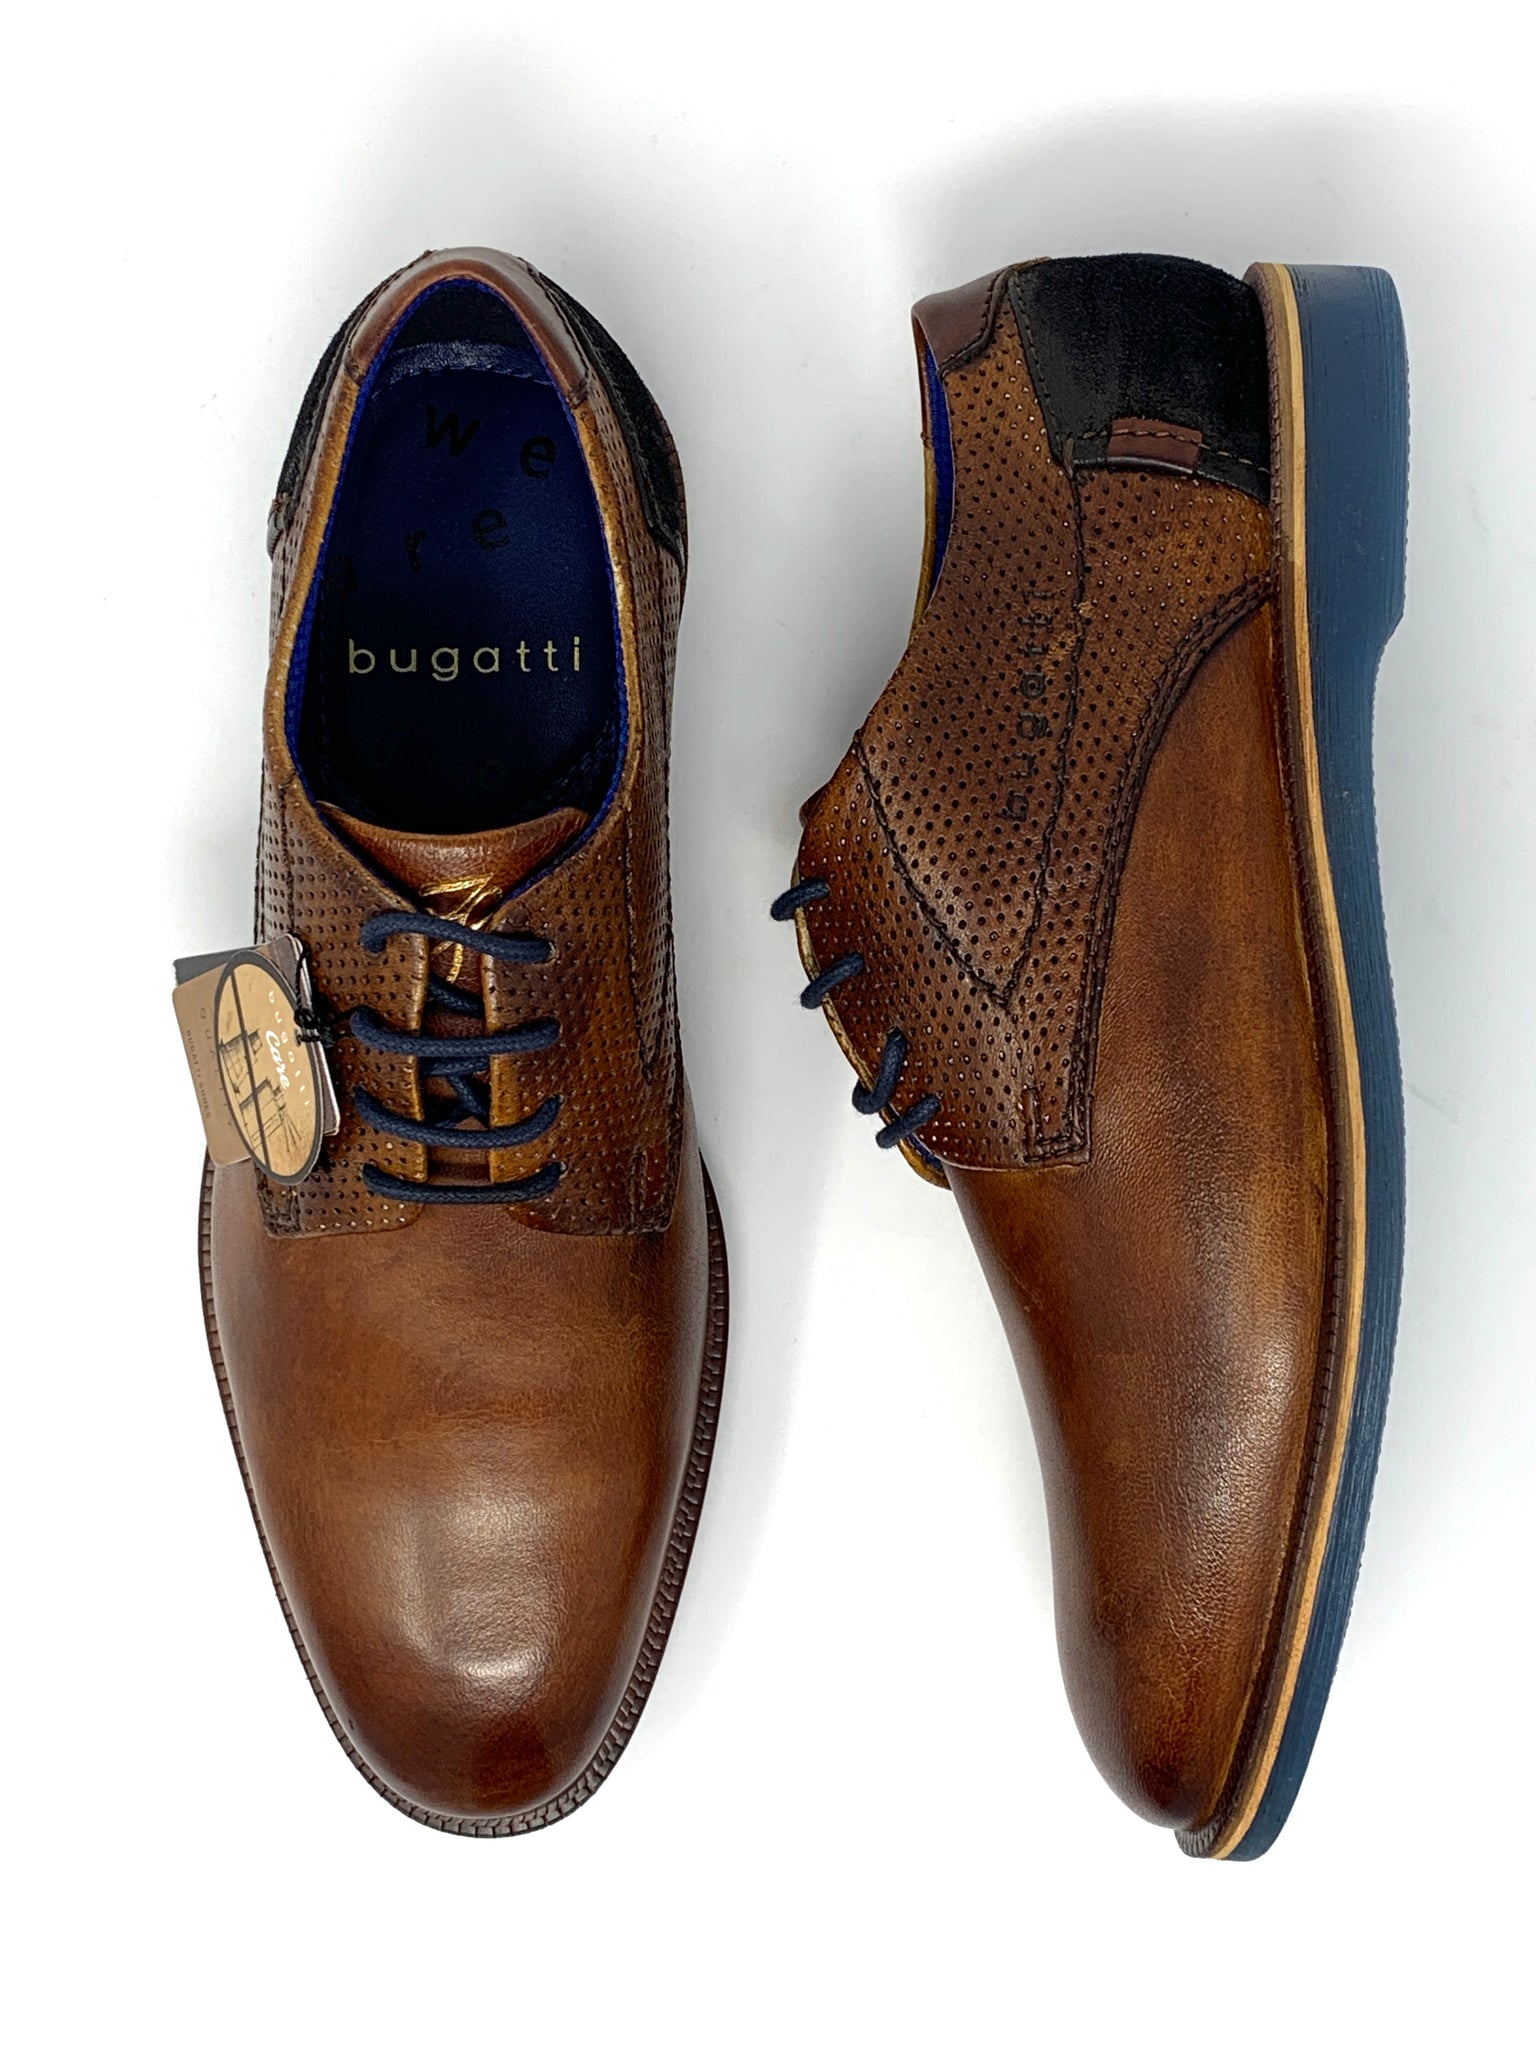 bugatti shoes online